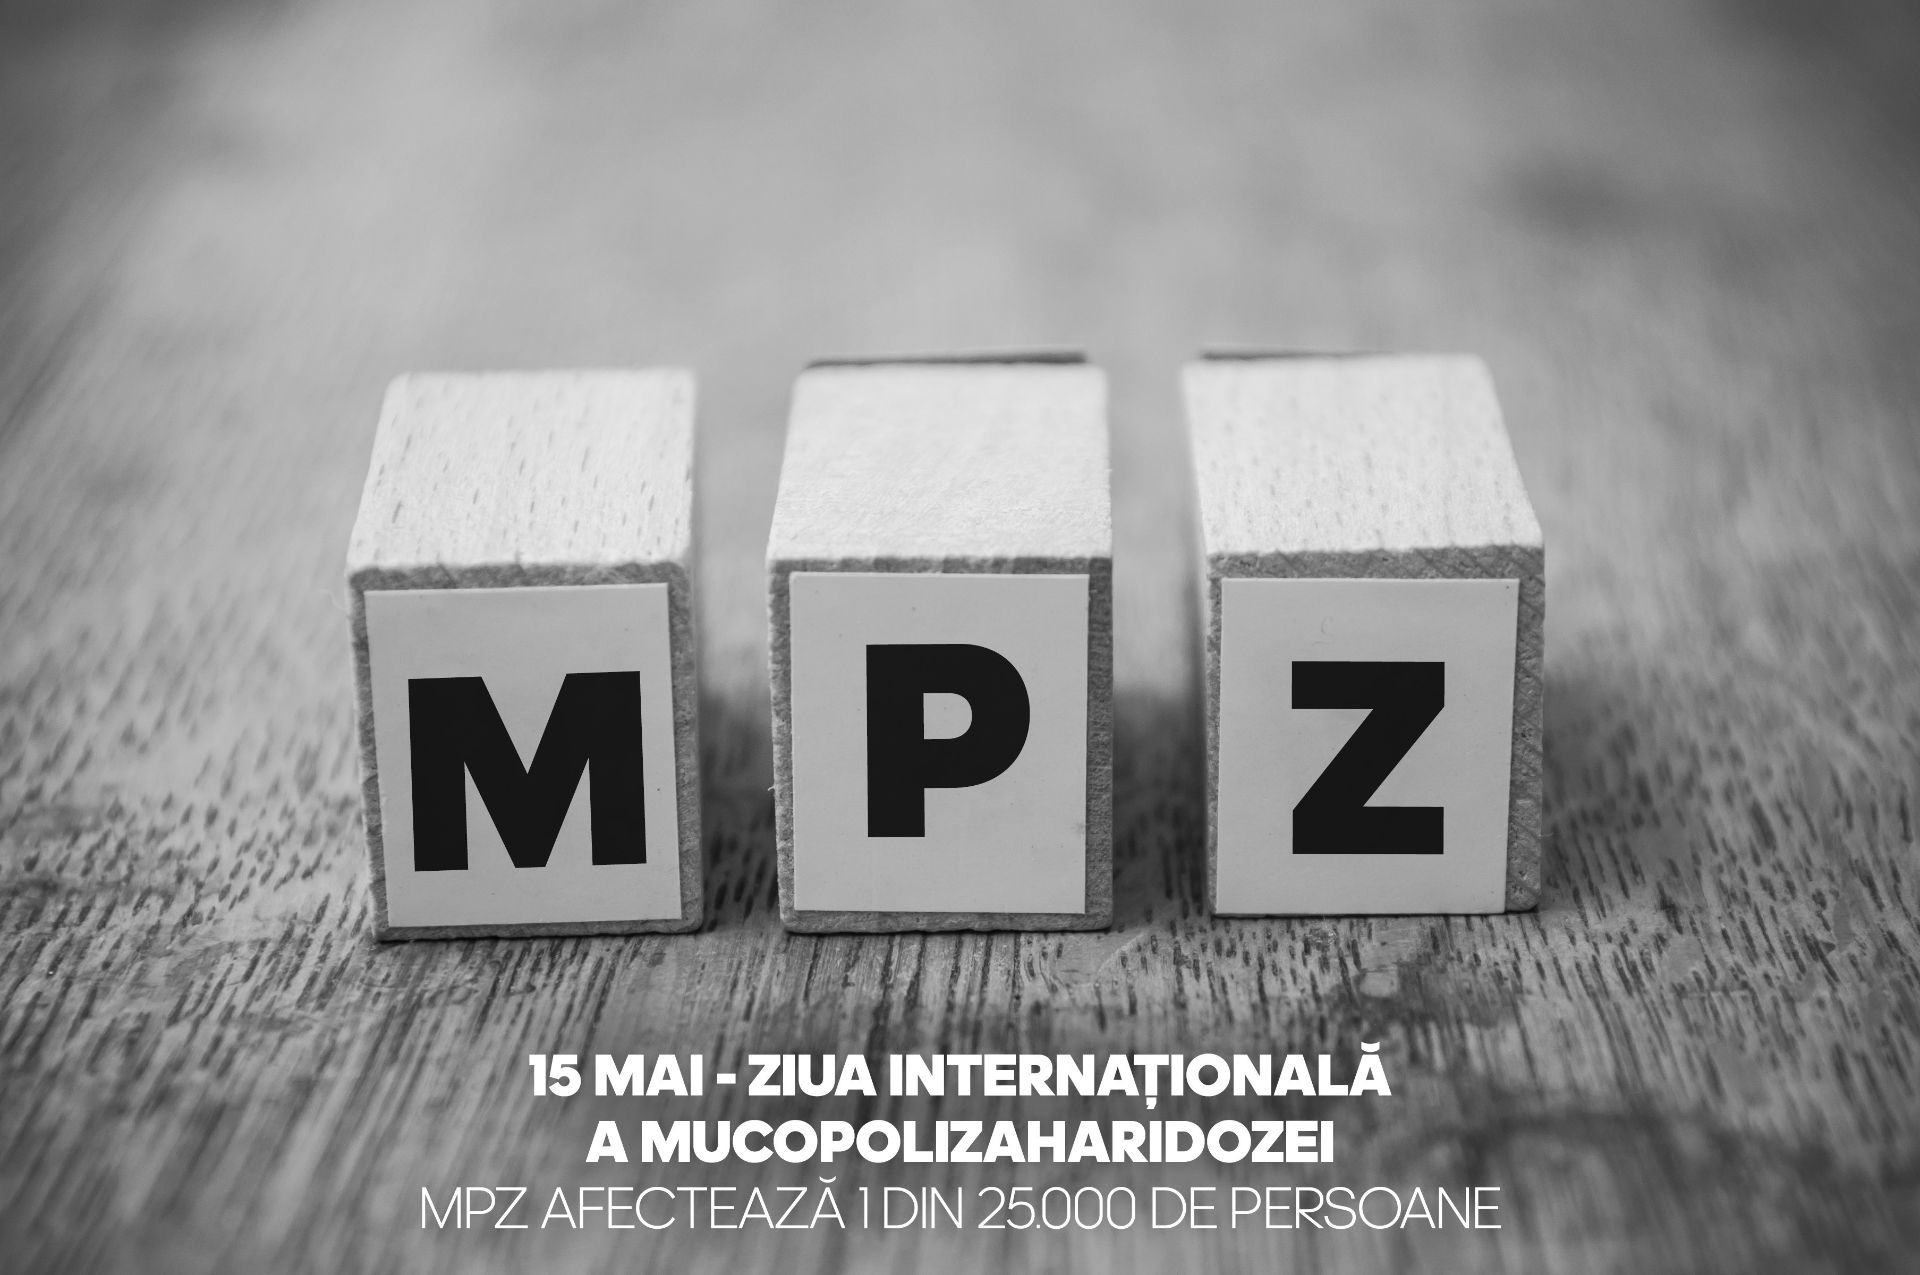 Ziua Internațională a Mucopolizaharidozei, marcată la 15 mai